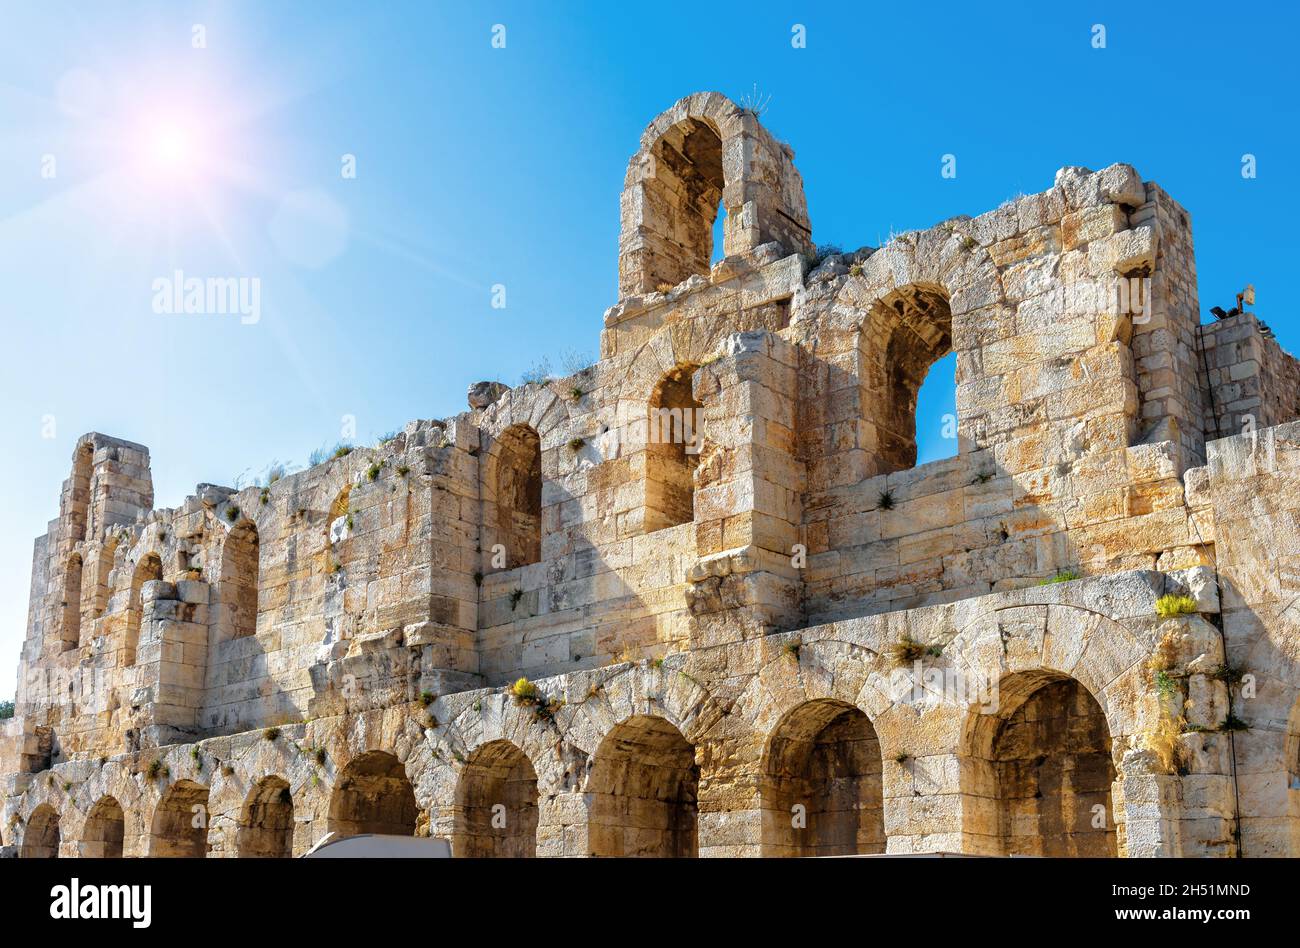 Odeon von Herodes Atticus auf der Akropolis von Athen, Griechenland. Es ist ein berühmtes Wahrzeichen Athens. Sonnige Ansicht des antiken griechischen Denkmals, Theaterruinen in Athen Stockfoto